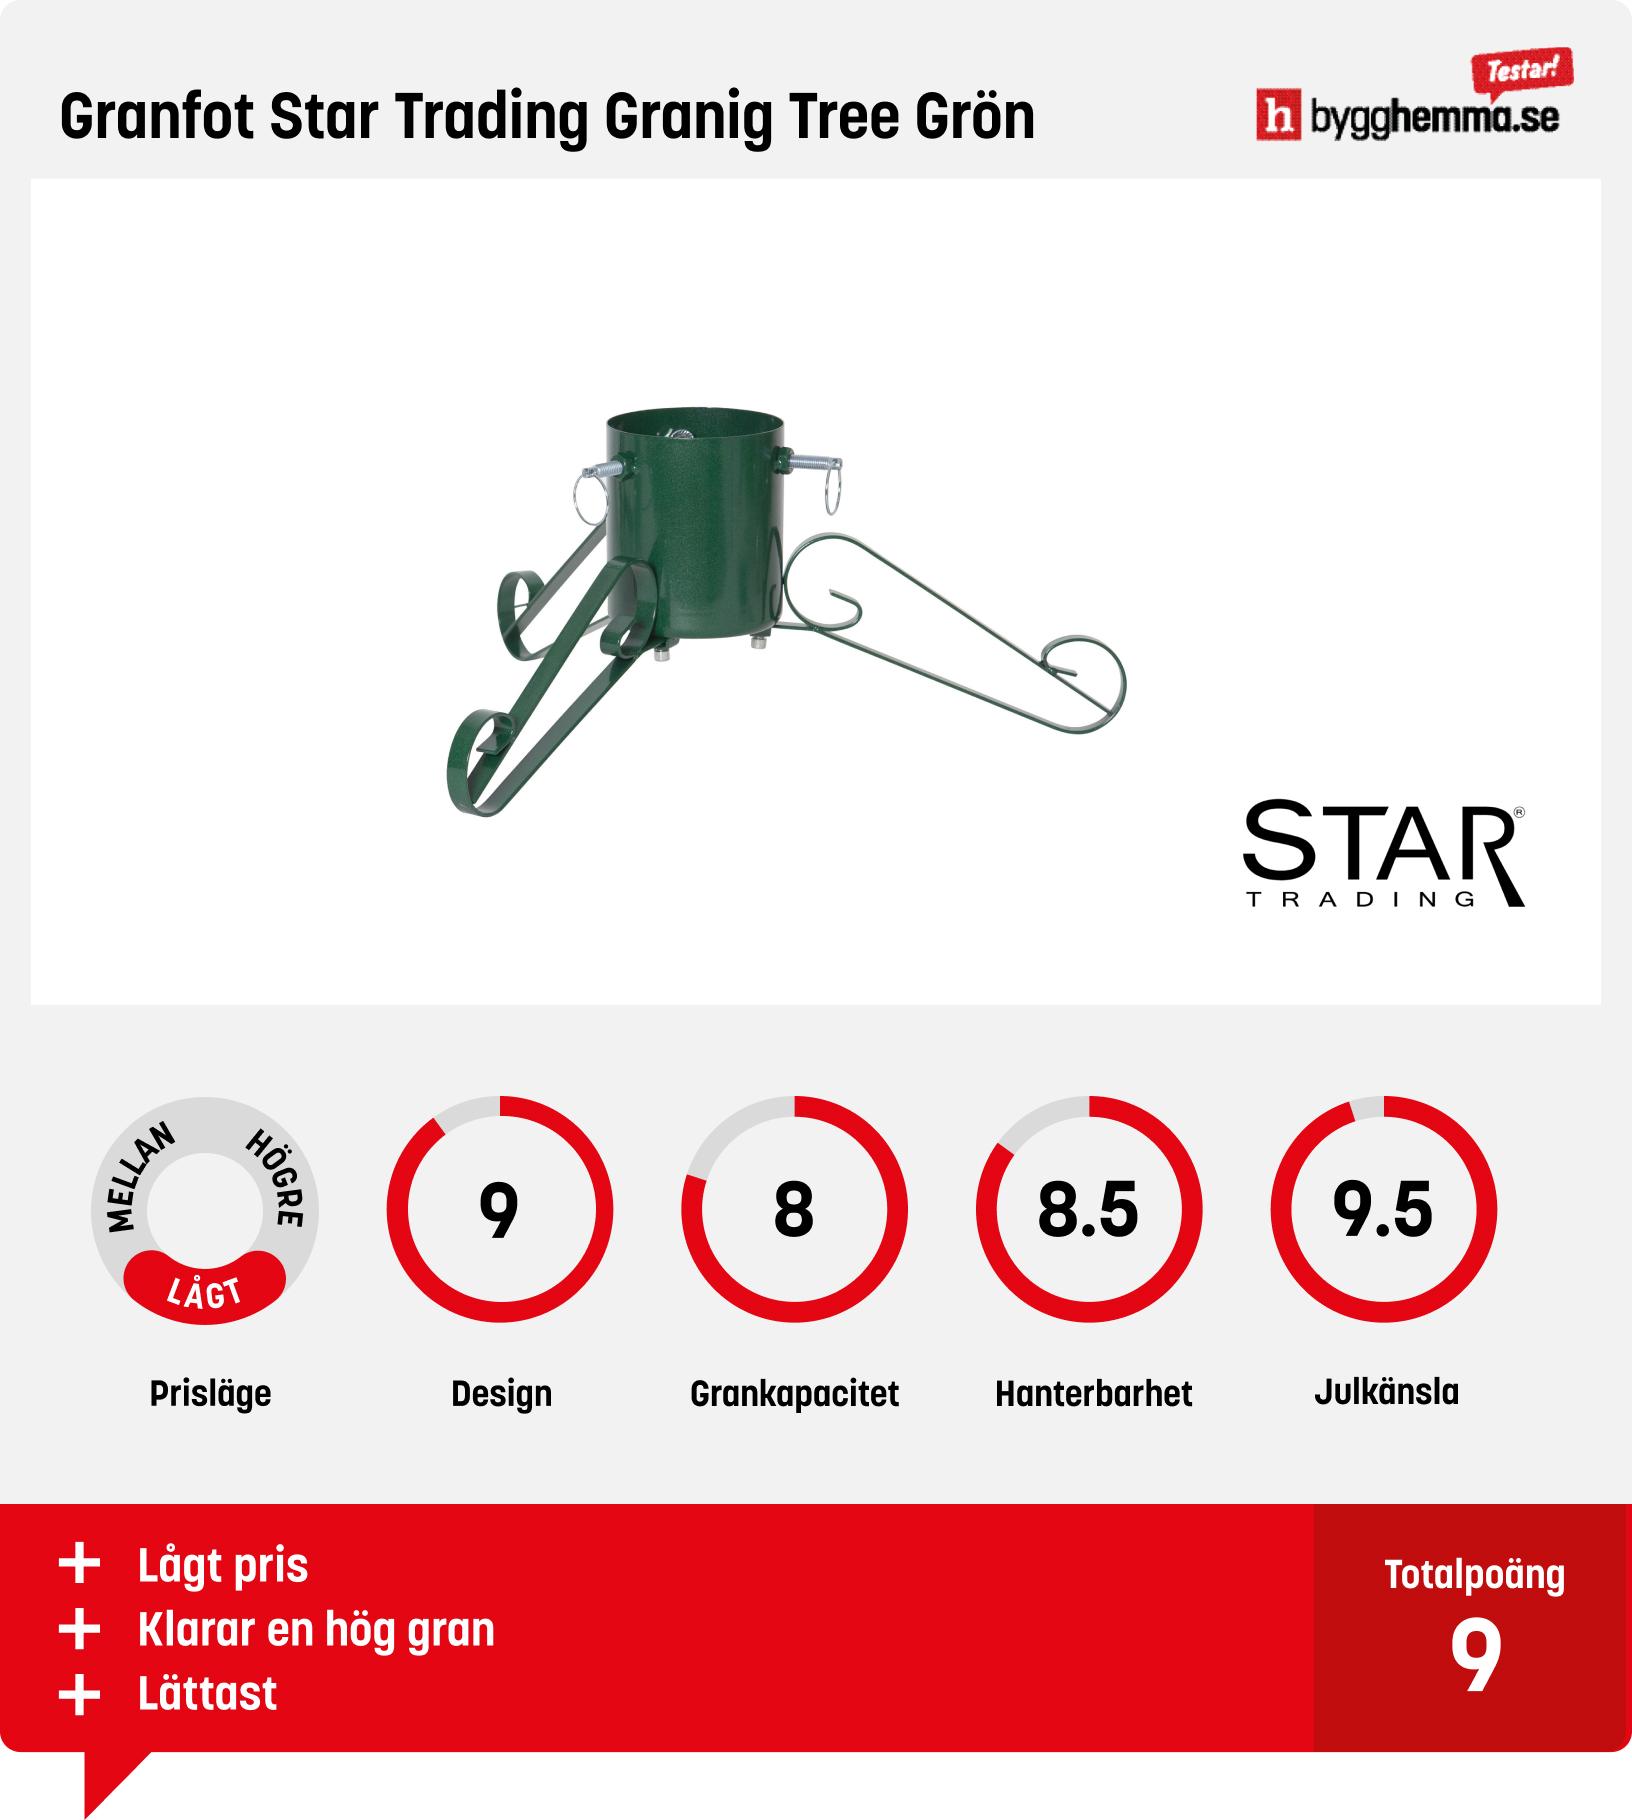 Julgransfot bäst i test - Granfot Star Trading Granig Tree Grön